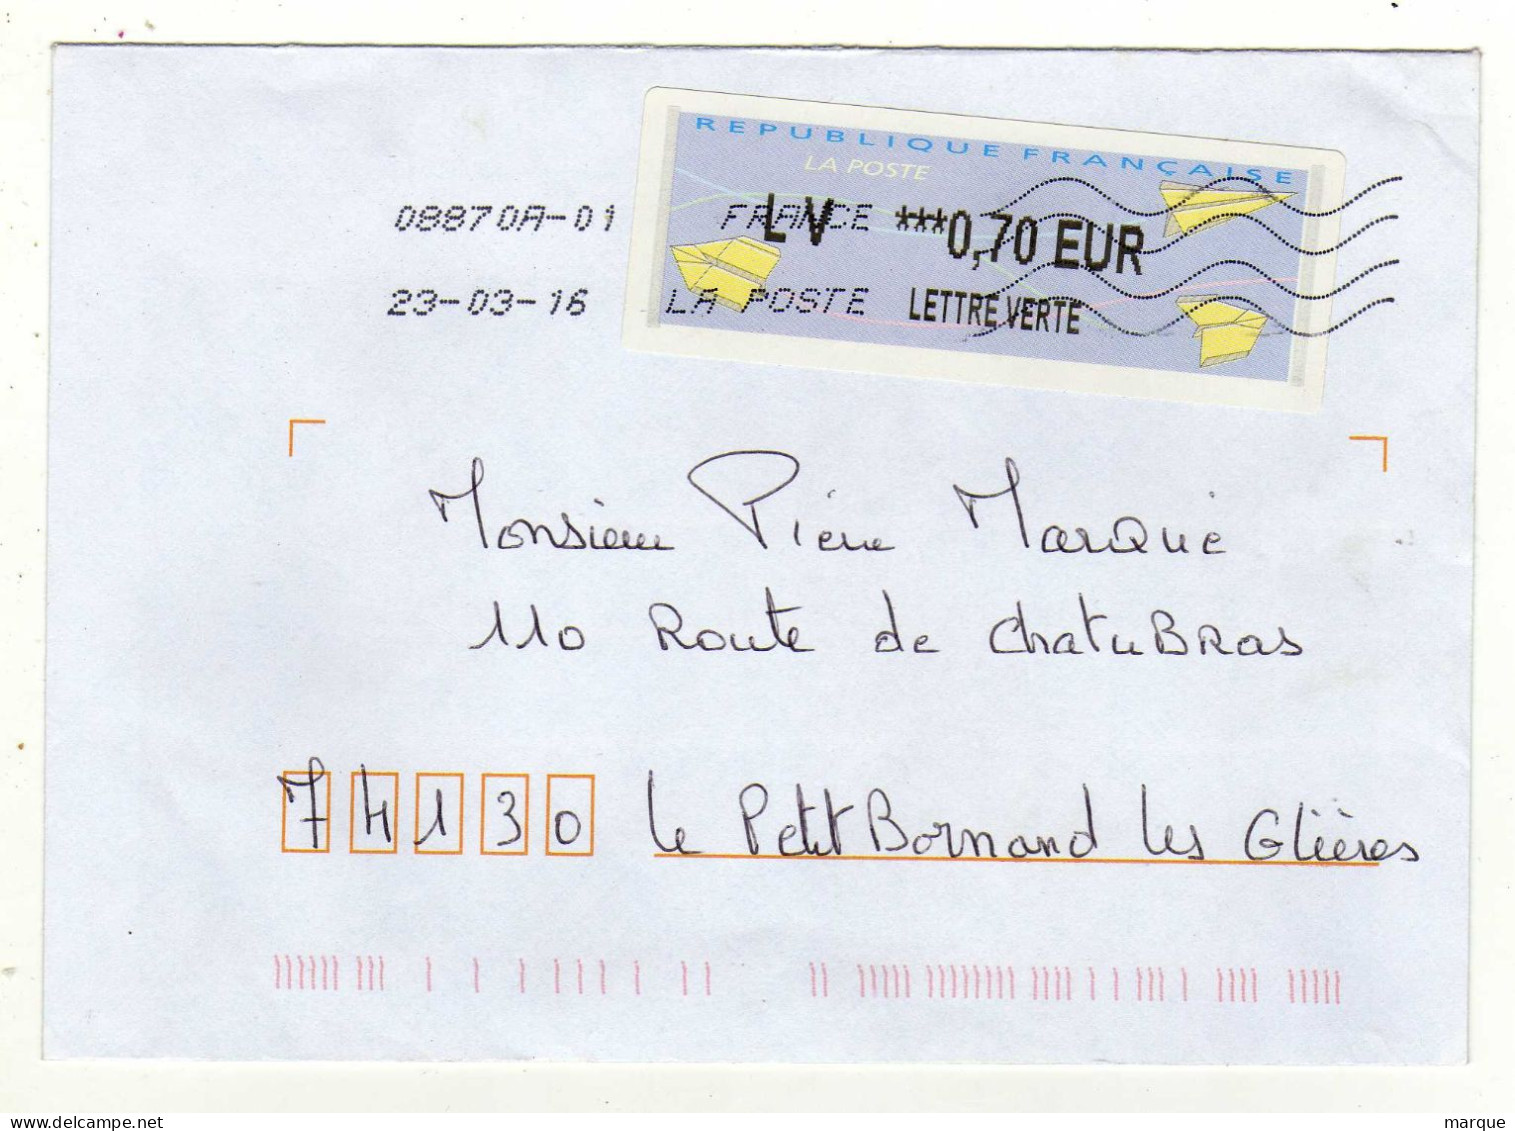 Enveloppe FRANCE Avec Vignette Affranchissement Lettre Verte Oblitération LA POSTE 08870A-01 23/03/2016 - 2000 « Avions En Papier »